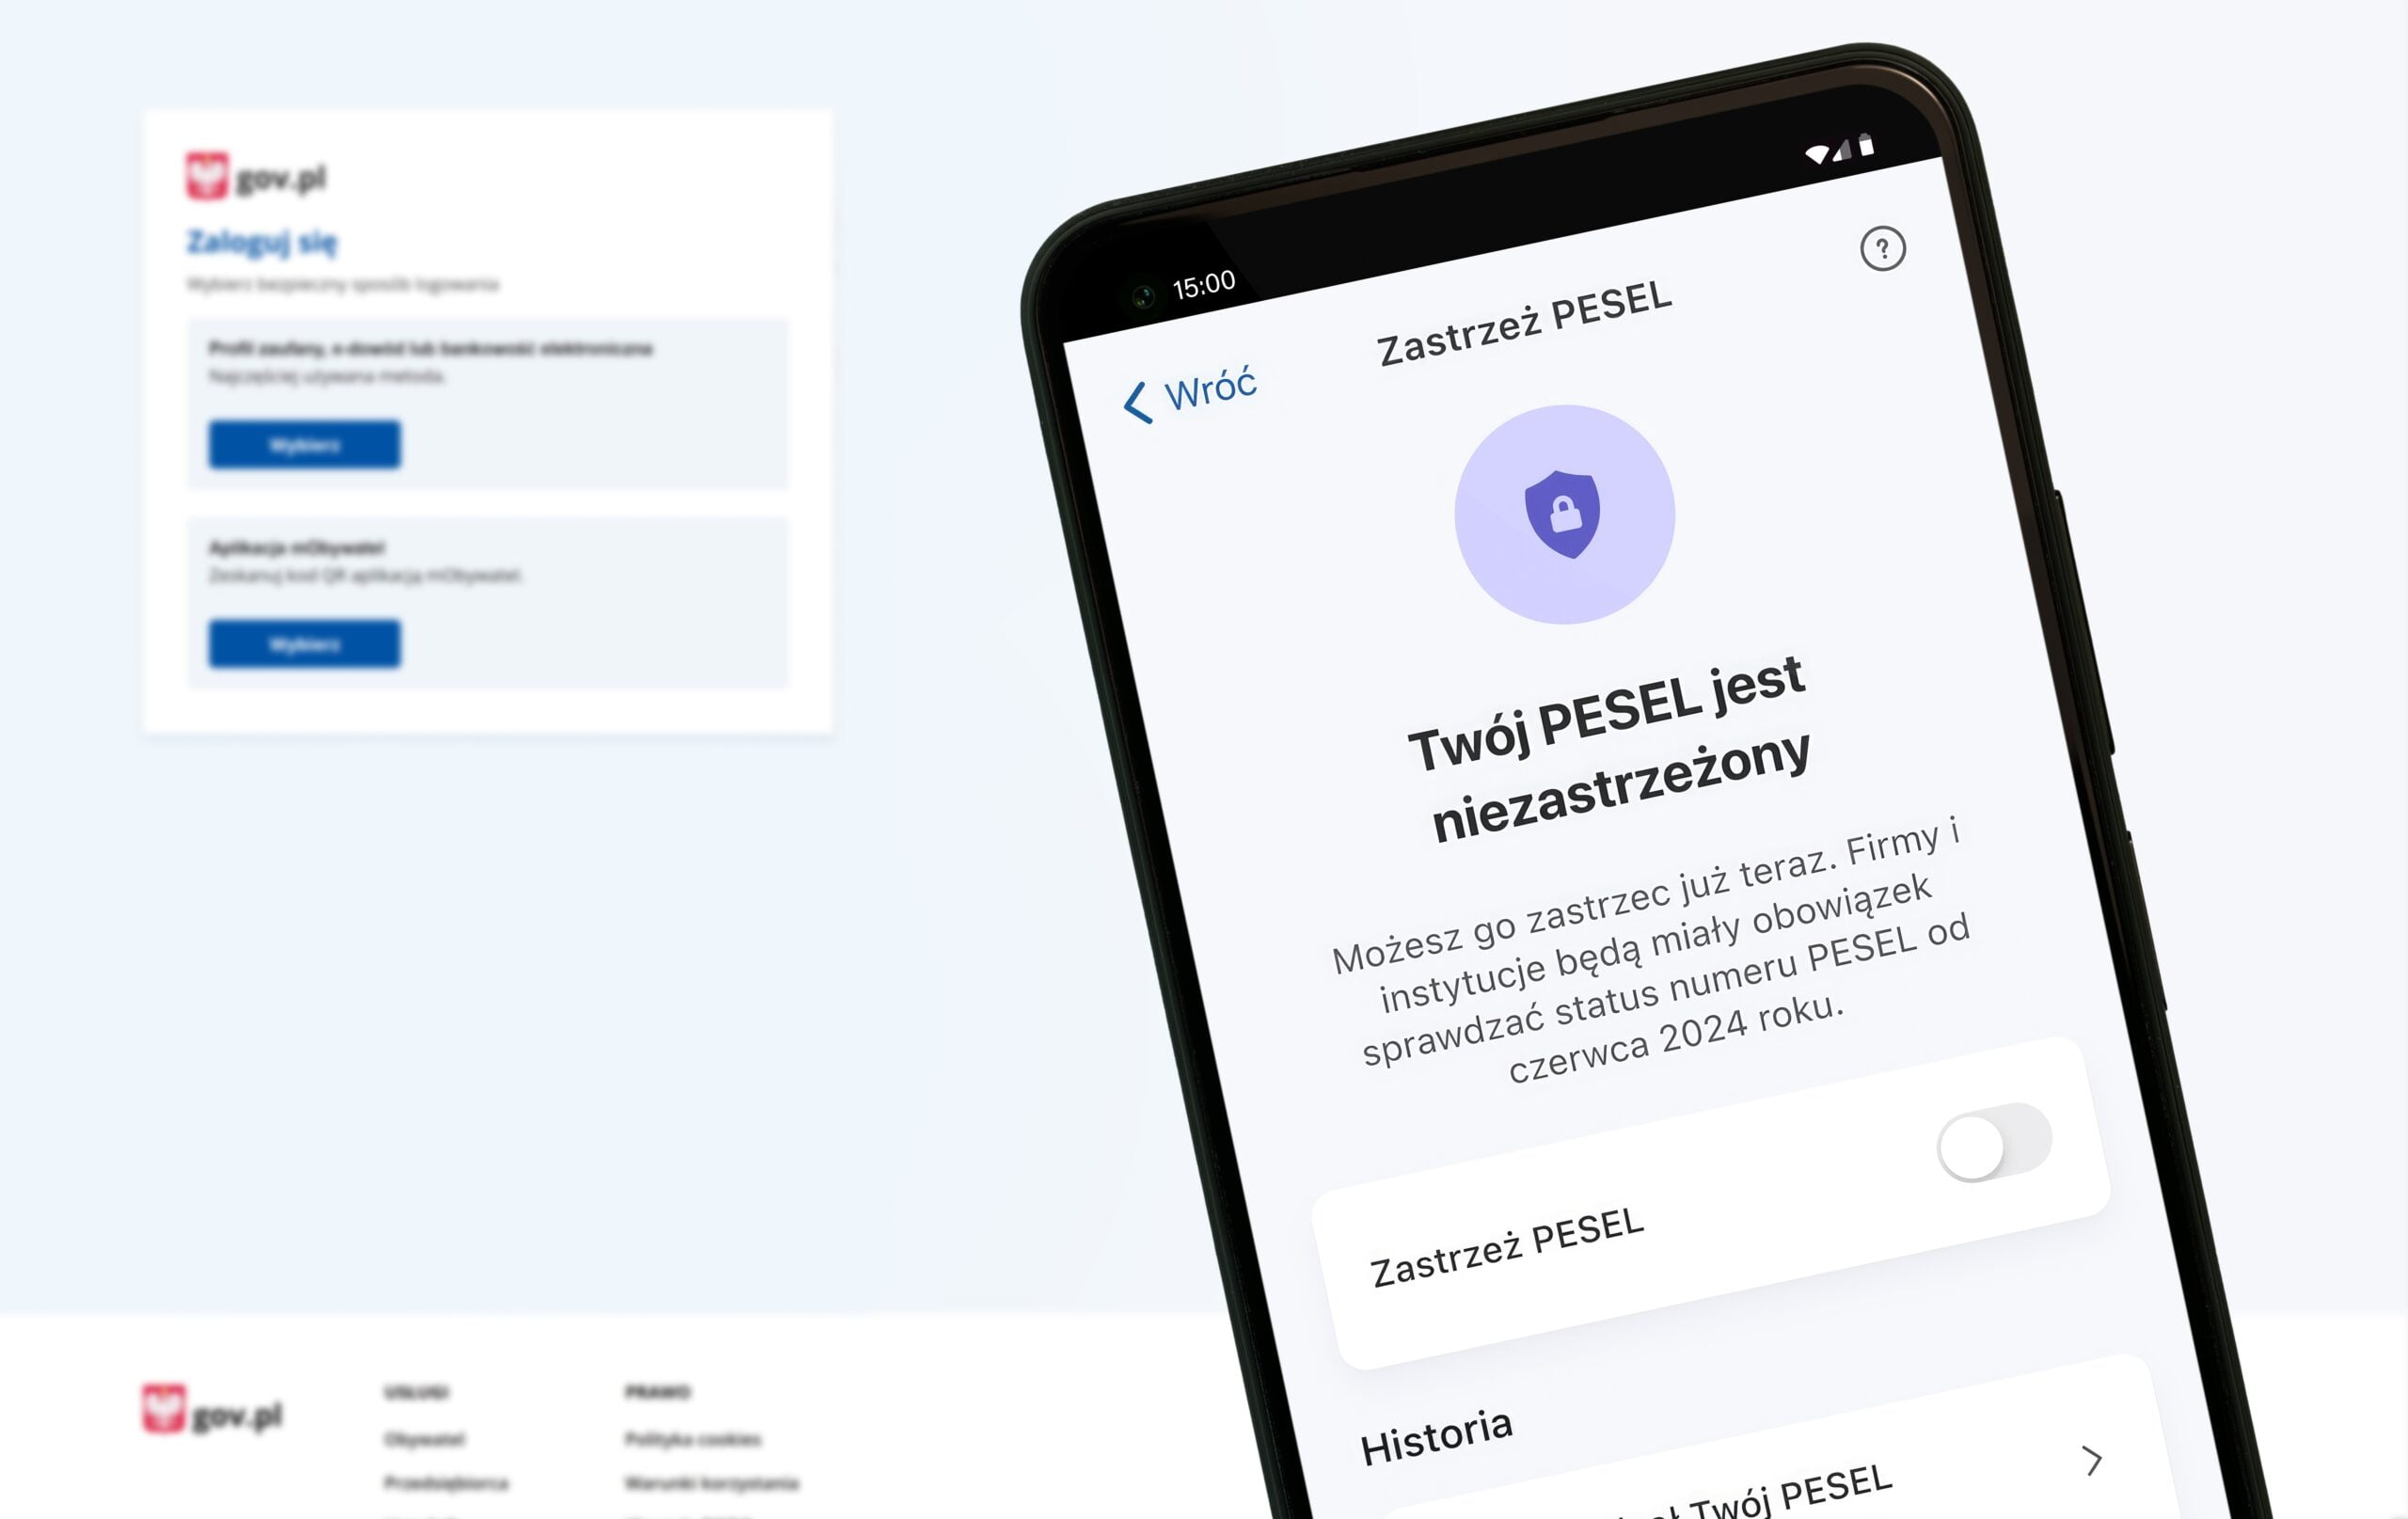 Ekran logowania na stronie gov.pl oraz ekran aplikacji z informacją o statusie PESEL na smartfonie.